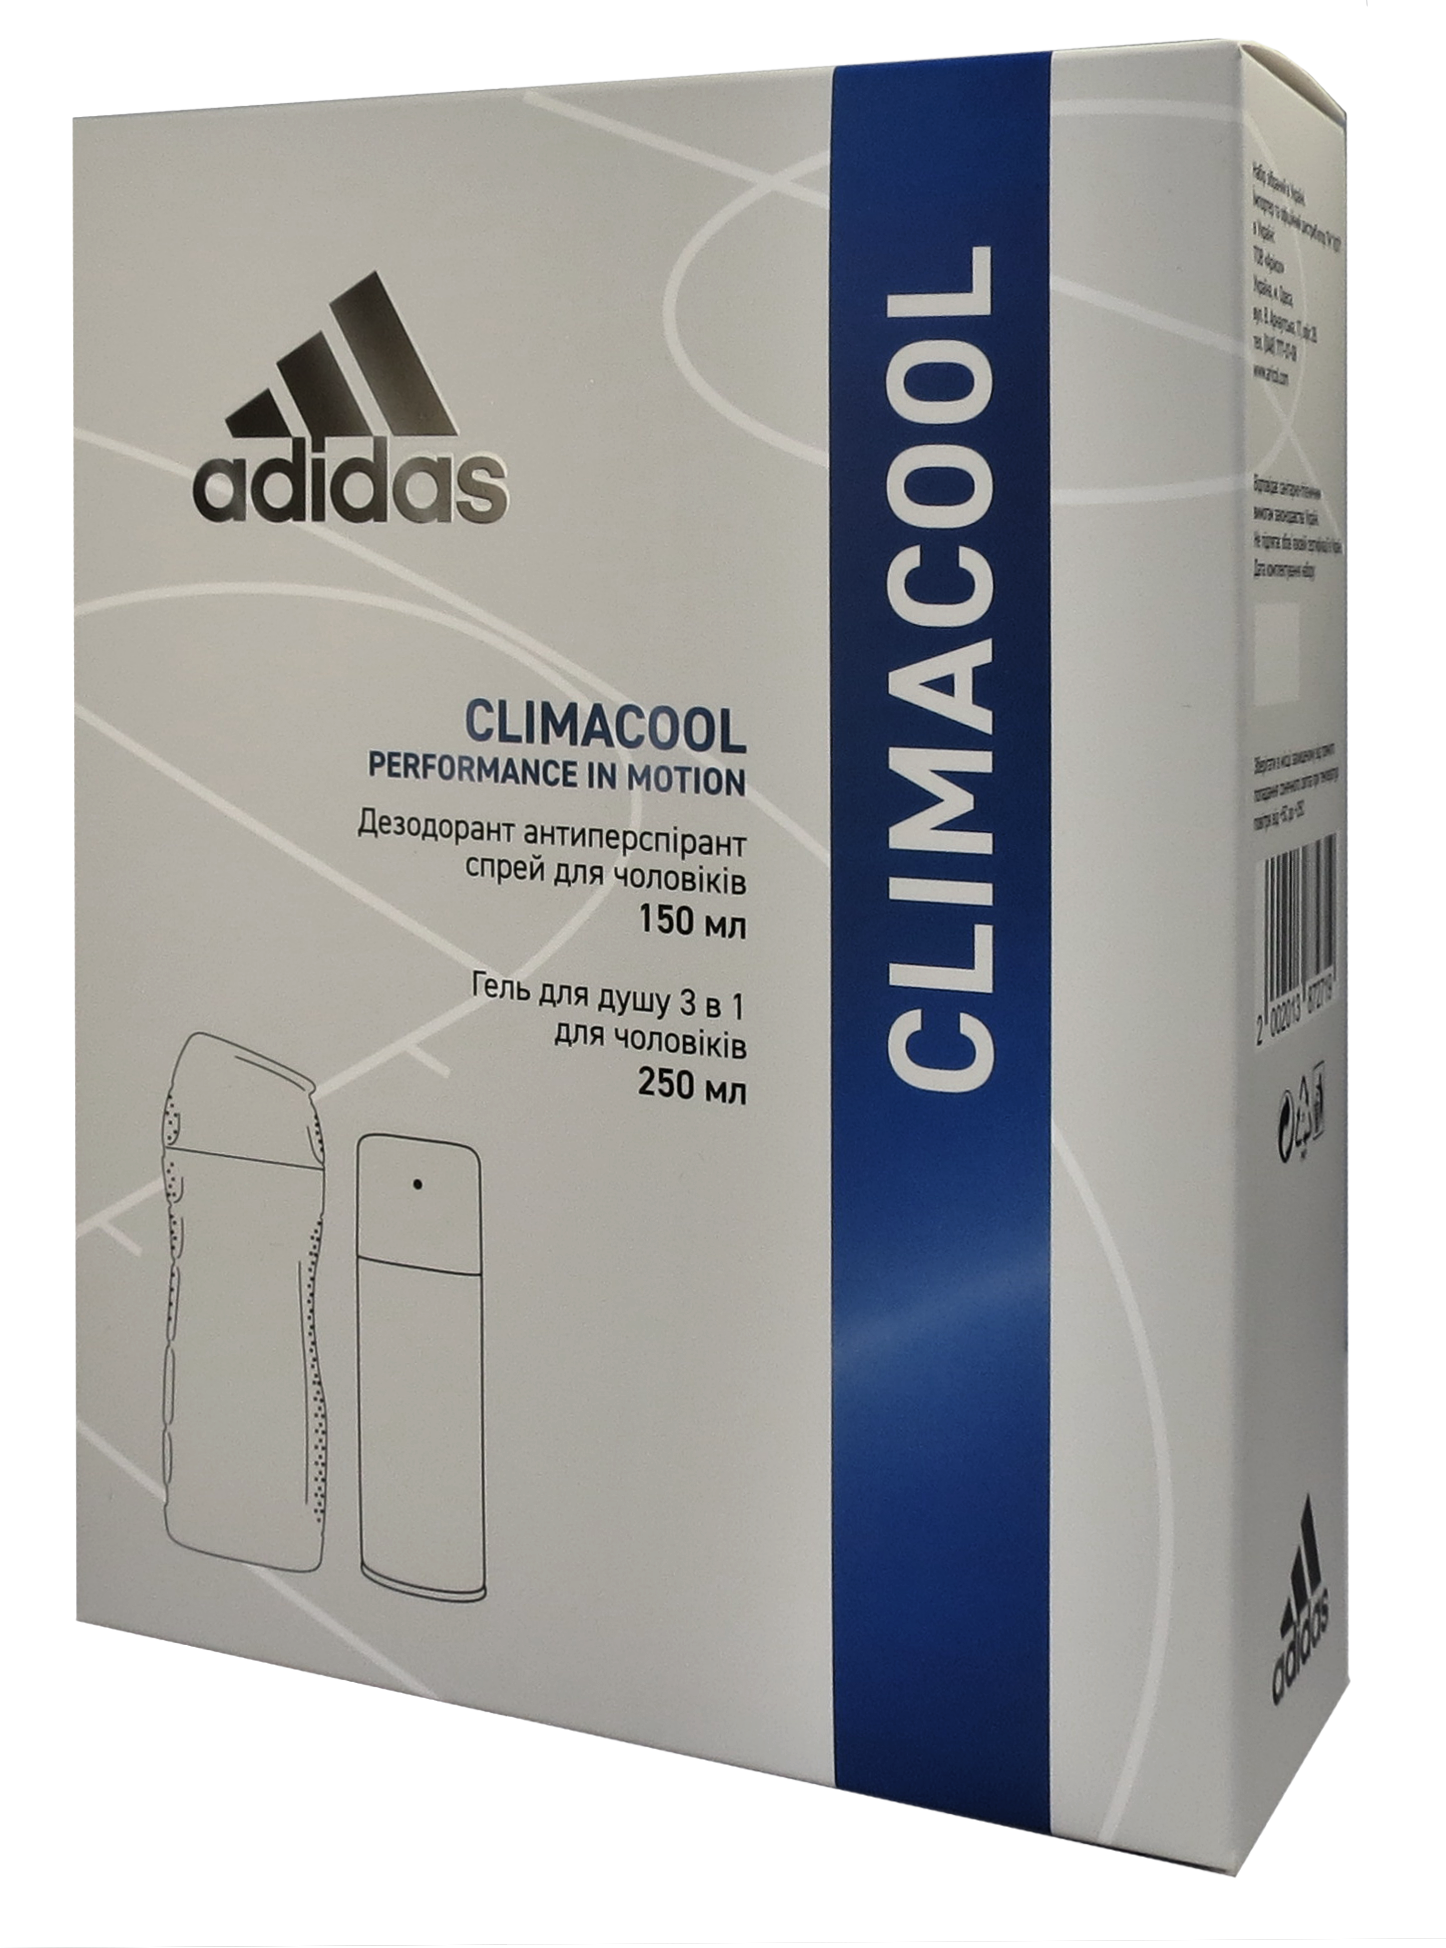 Набір для чоловіків Adidas 2020 Дезодорант-антиперспірант Climacool 150 мл + Гель для душу 3in1 Body hair and face 250 мл - фото 2